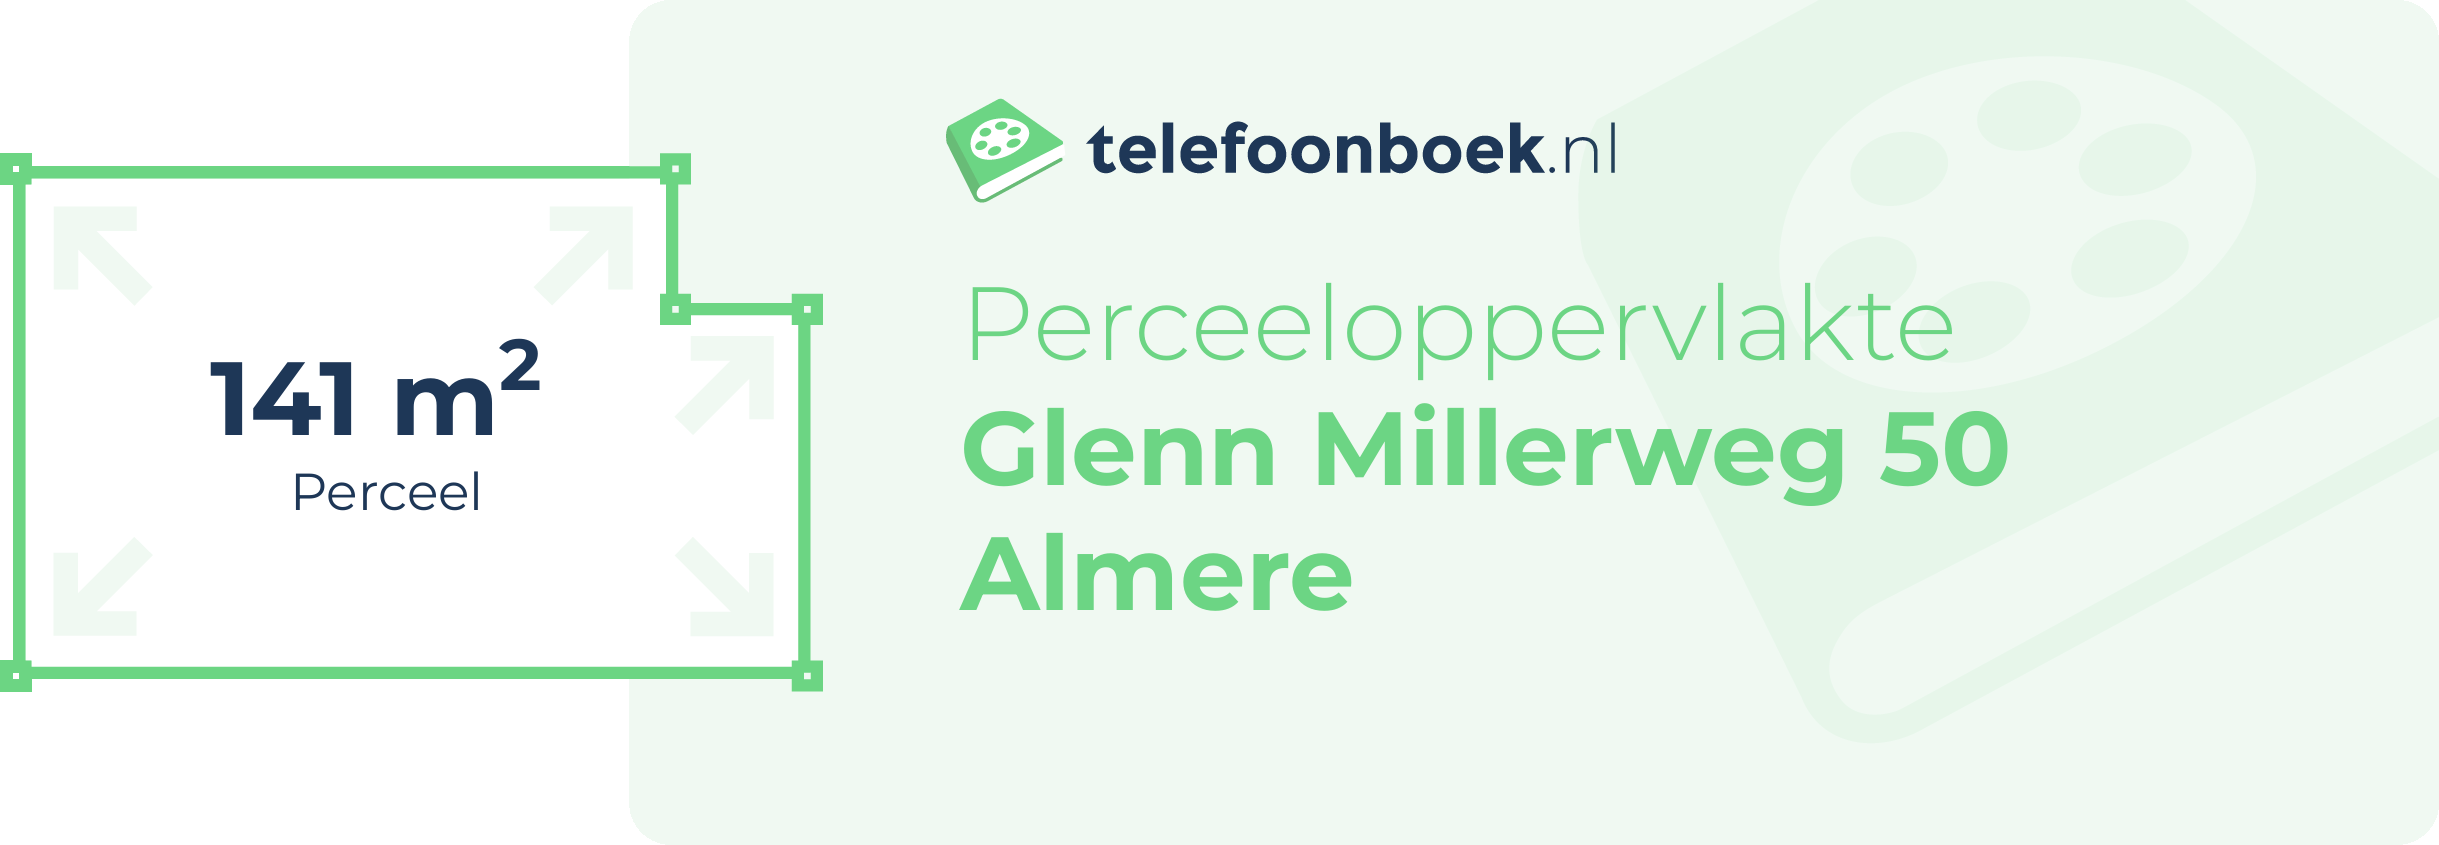 Perceeloppervlakte Glenn Millerweg 50 Almere